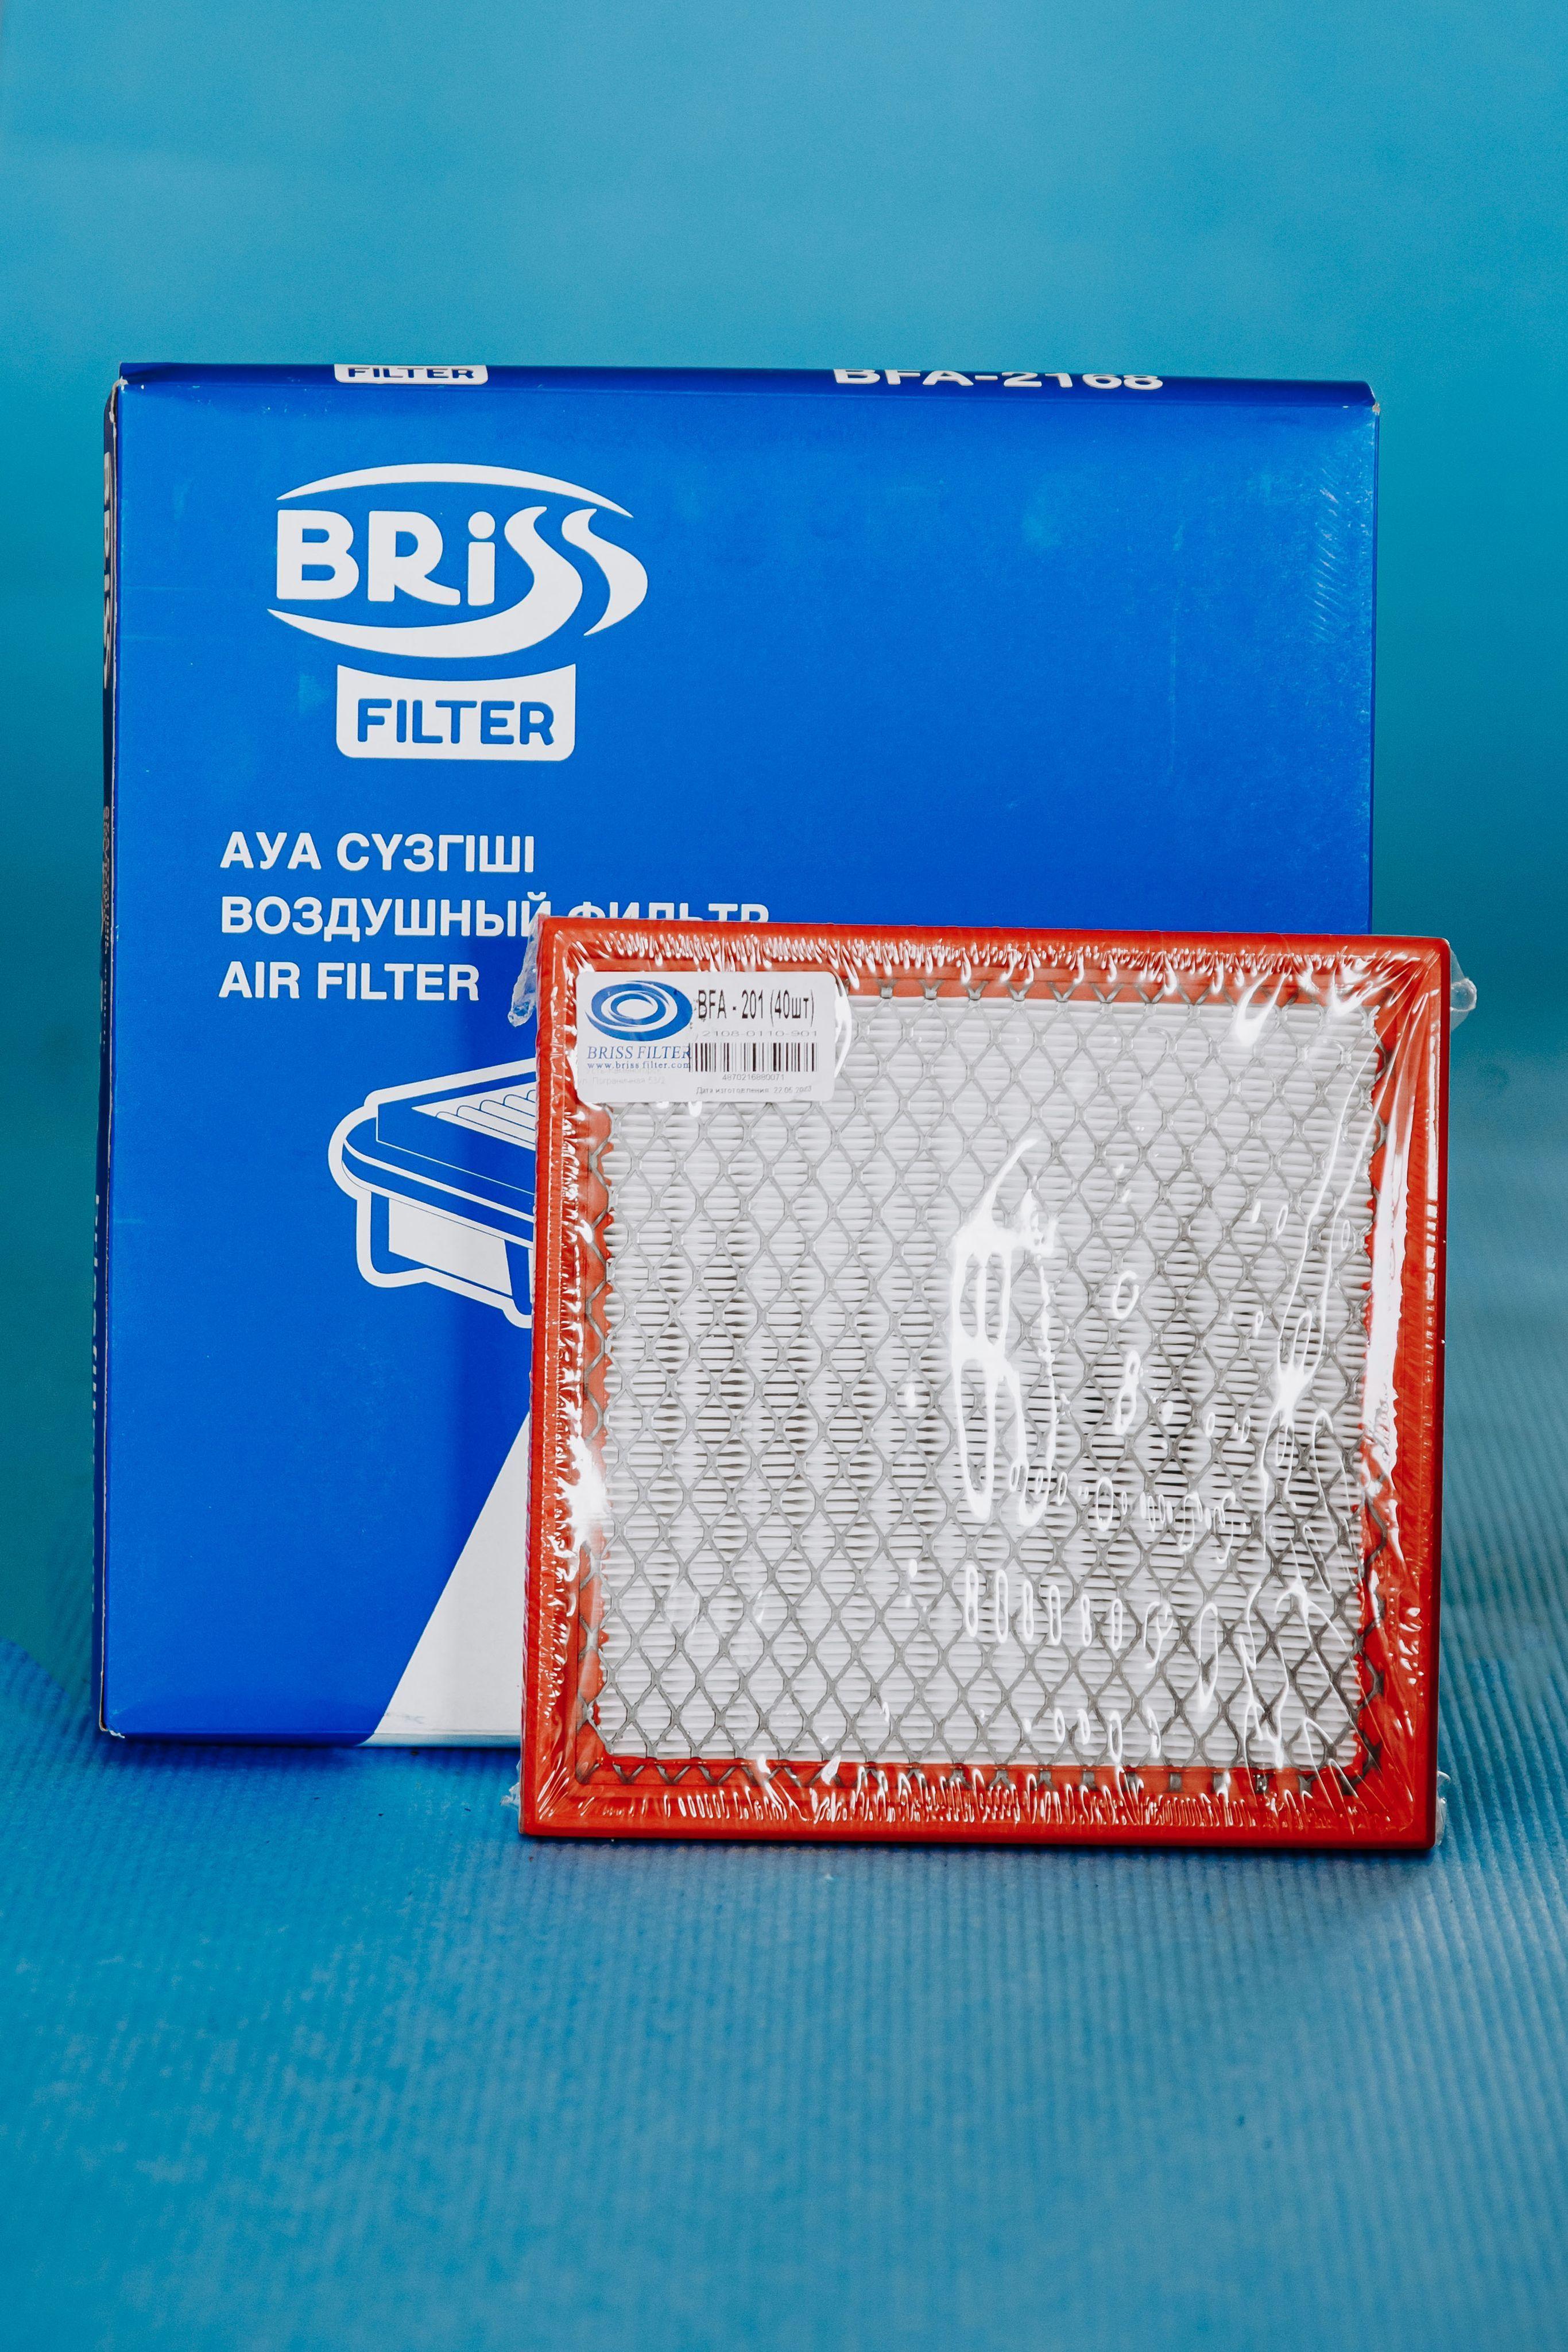 BRISSFILTER Фильтр воздушный Пылевой арт. 2112-1109080, 1 шт.